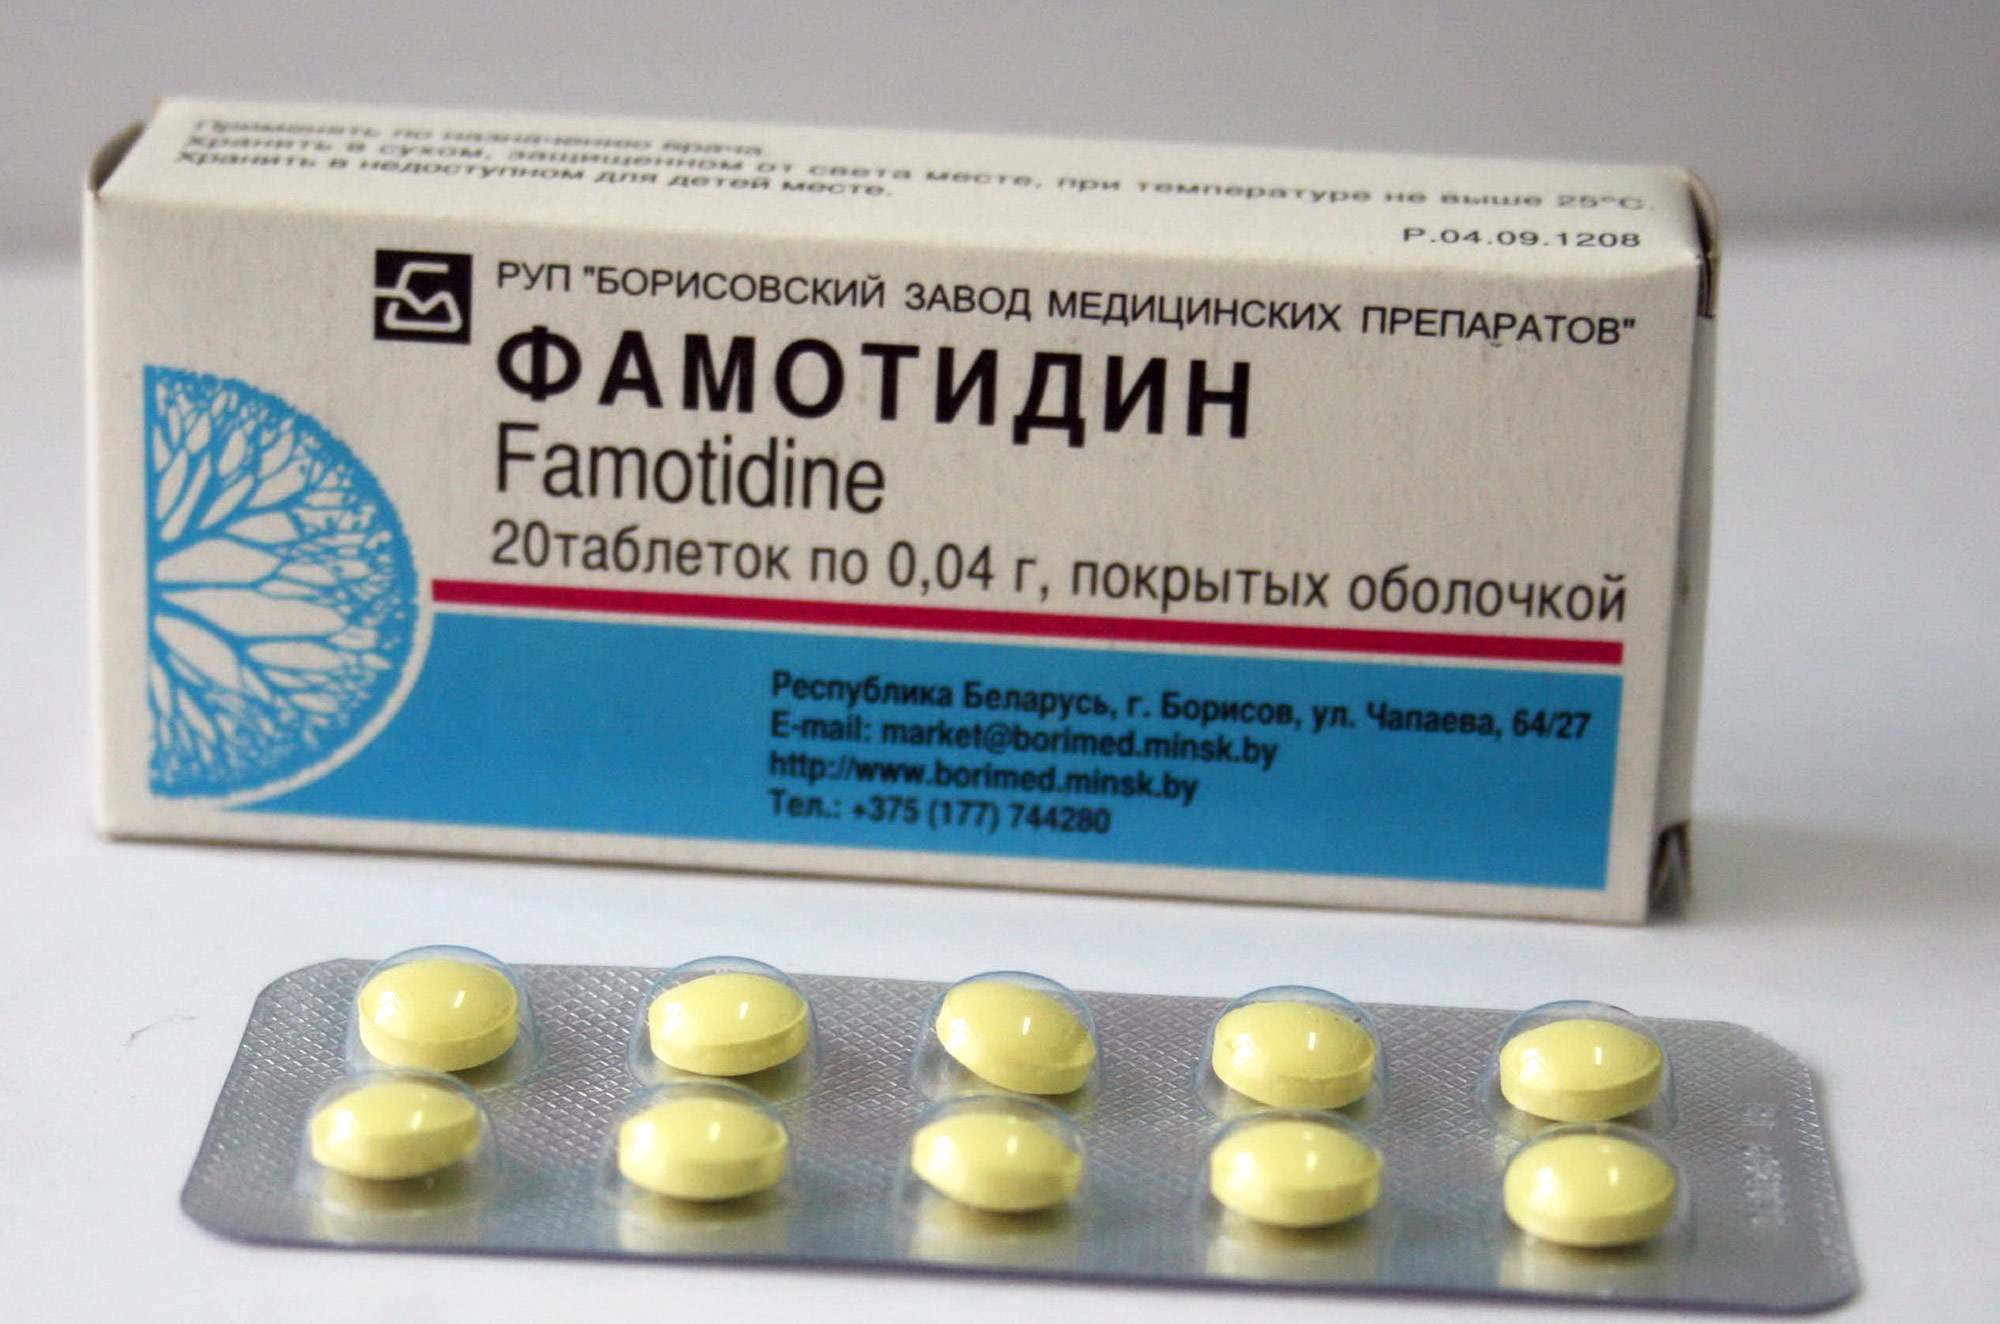 Коронавирус. Лекарства. Фамотидин против COVID-19: новая надежда .